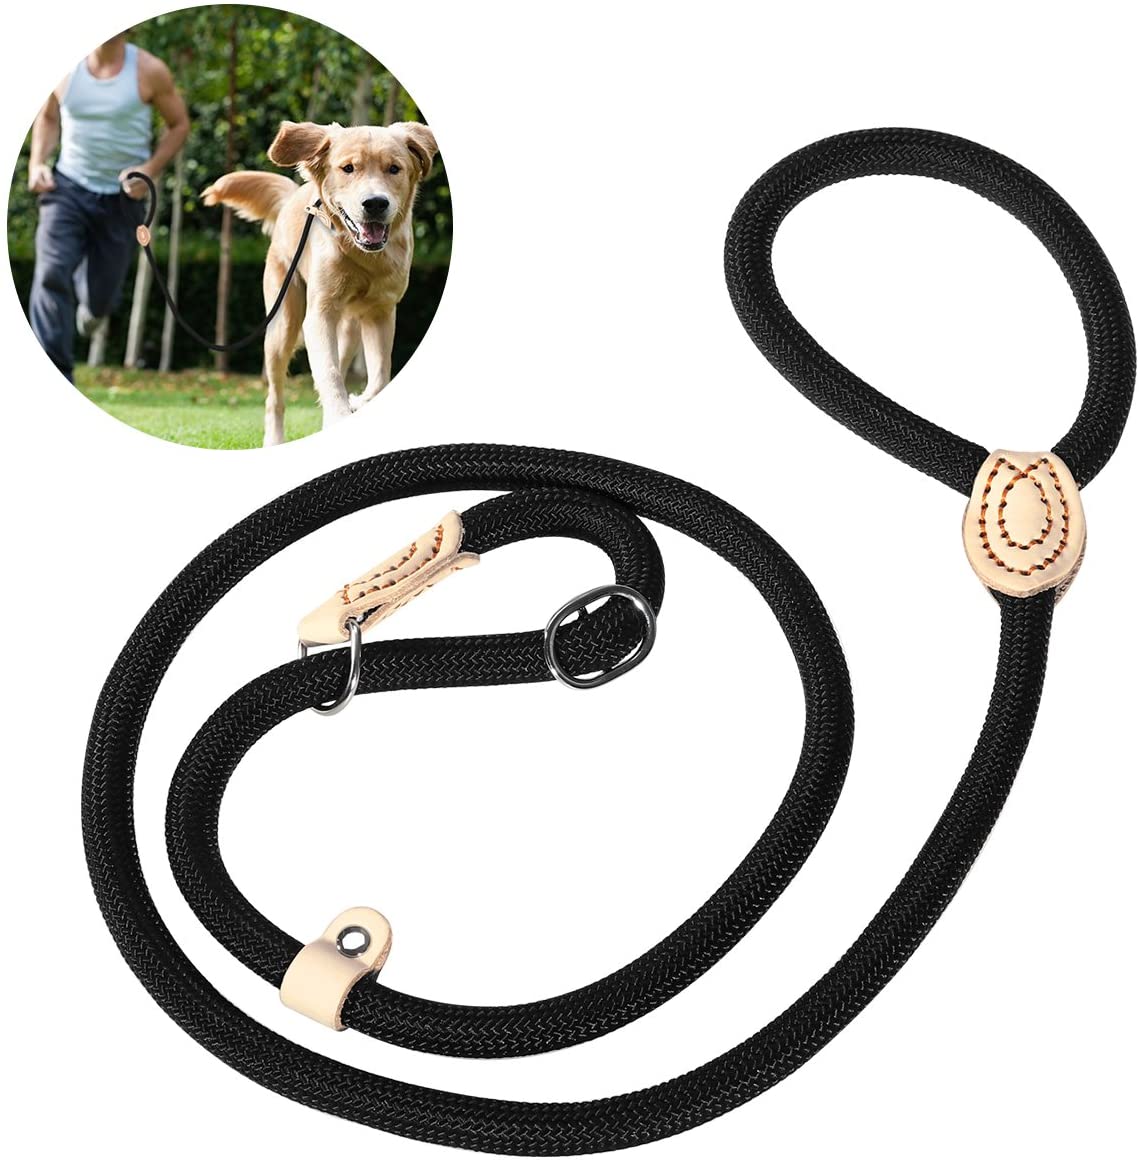  UEETEK 1,4 CM perro Slip formación correa Collar Nylon plomo para mascotas entrenamiento (negro) 